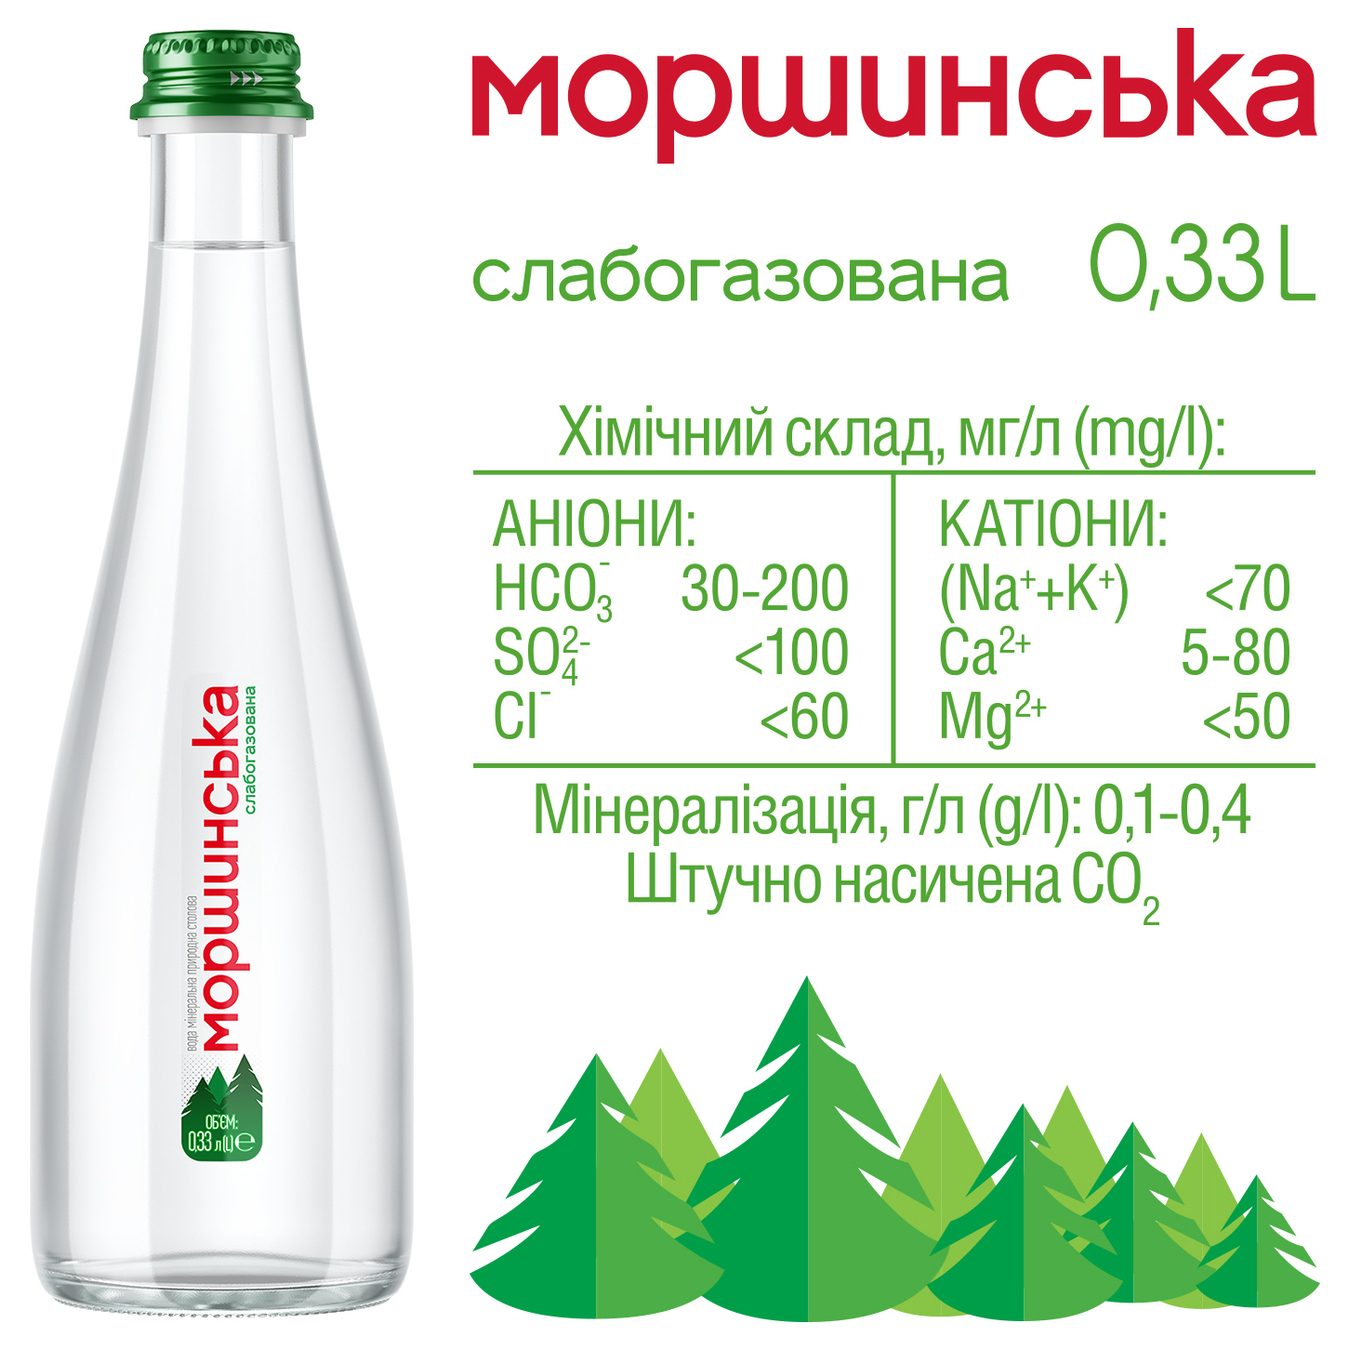 Morshynska Light sparkling mineral water 0,33l 3